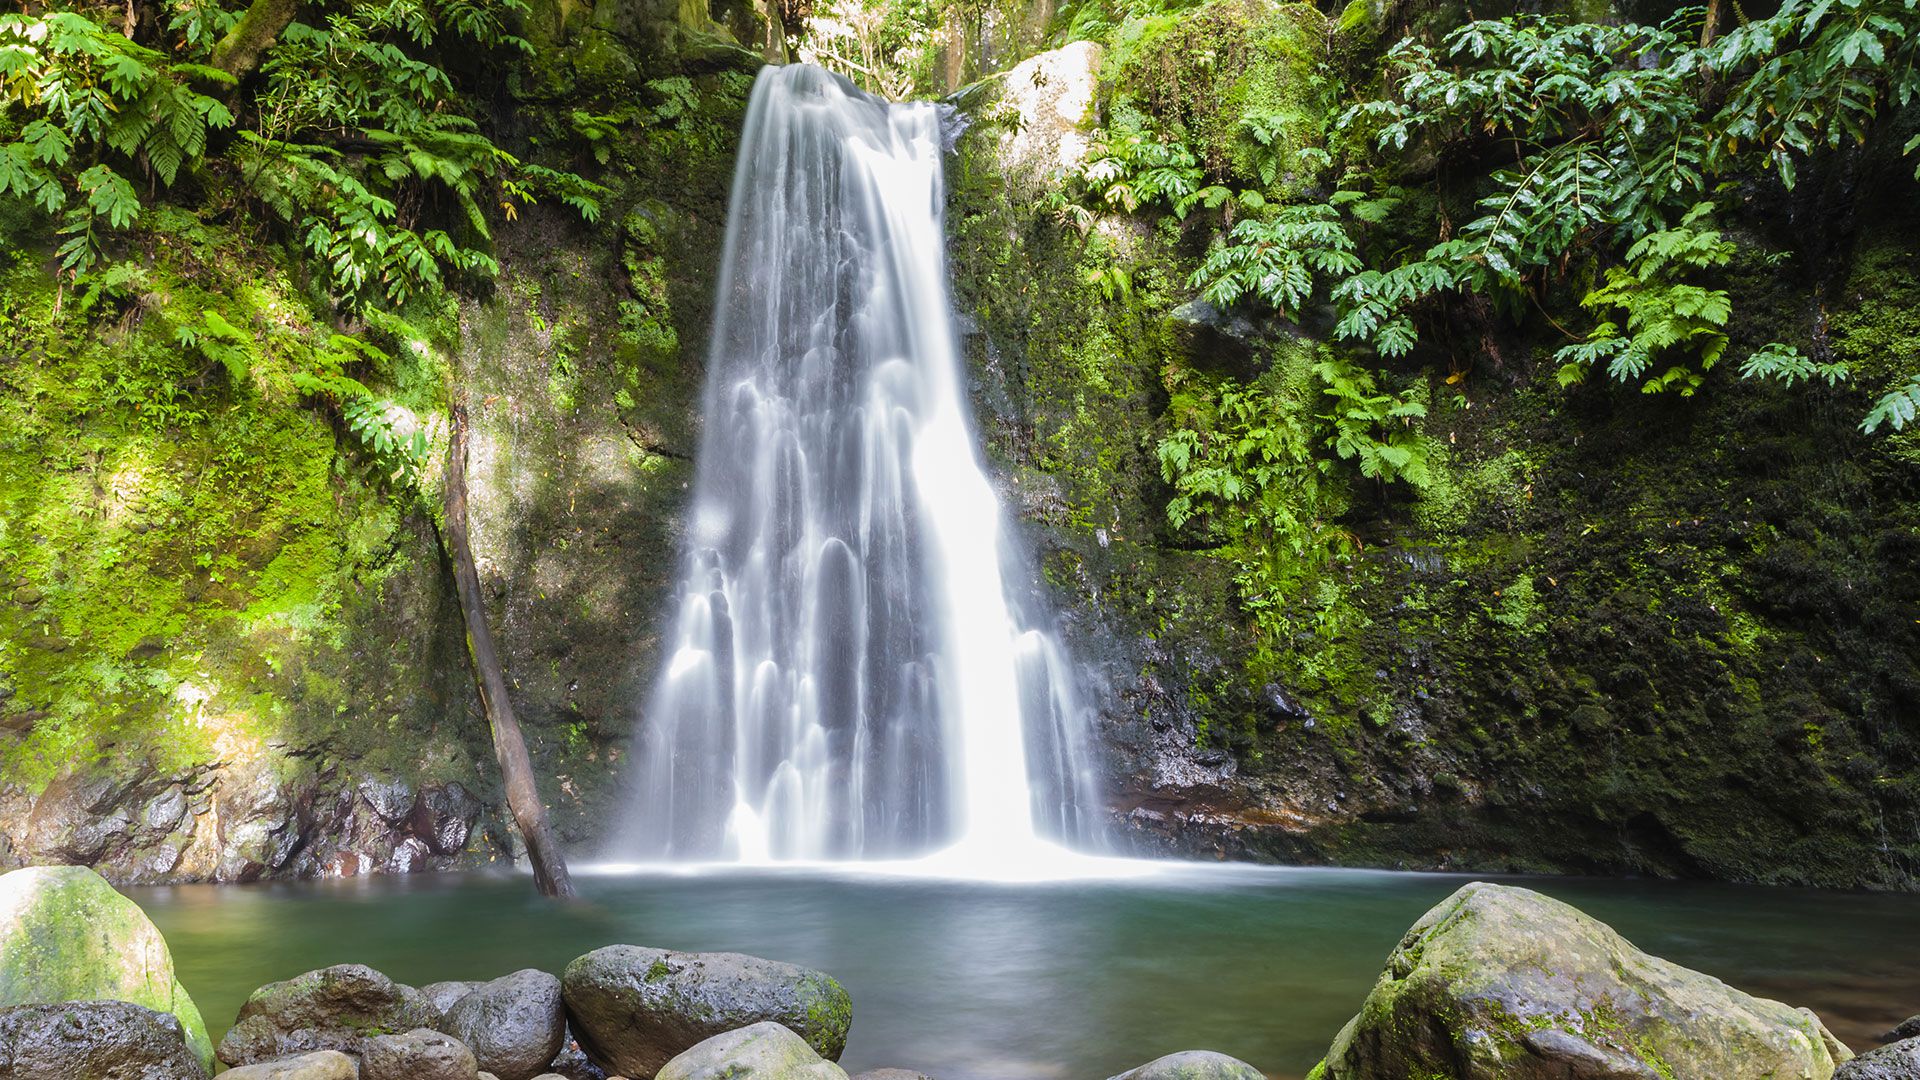 São Miguel, Santa María, São Jorge y Flores cuentan con más de 50 rutas repletas de cascadas, desde las más pequeñas para principiantes hasta descensos para profesionales (Shutterstock)